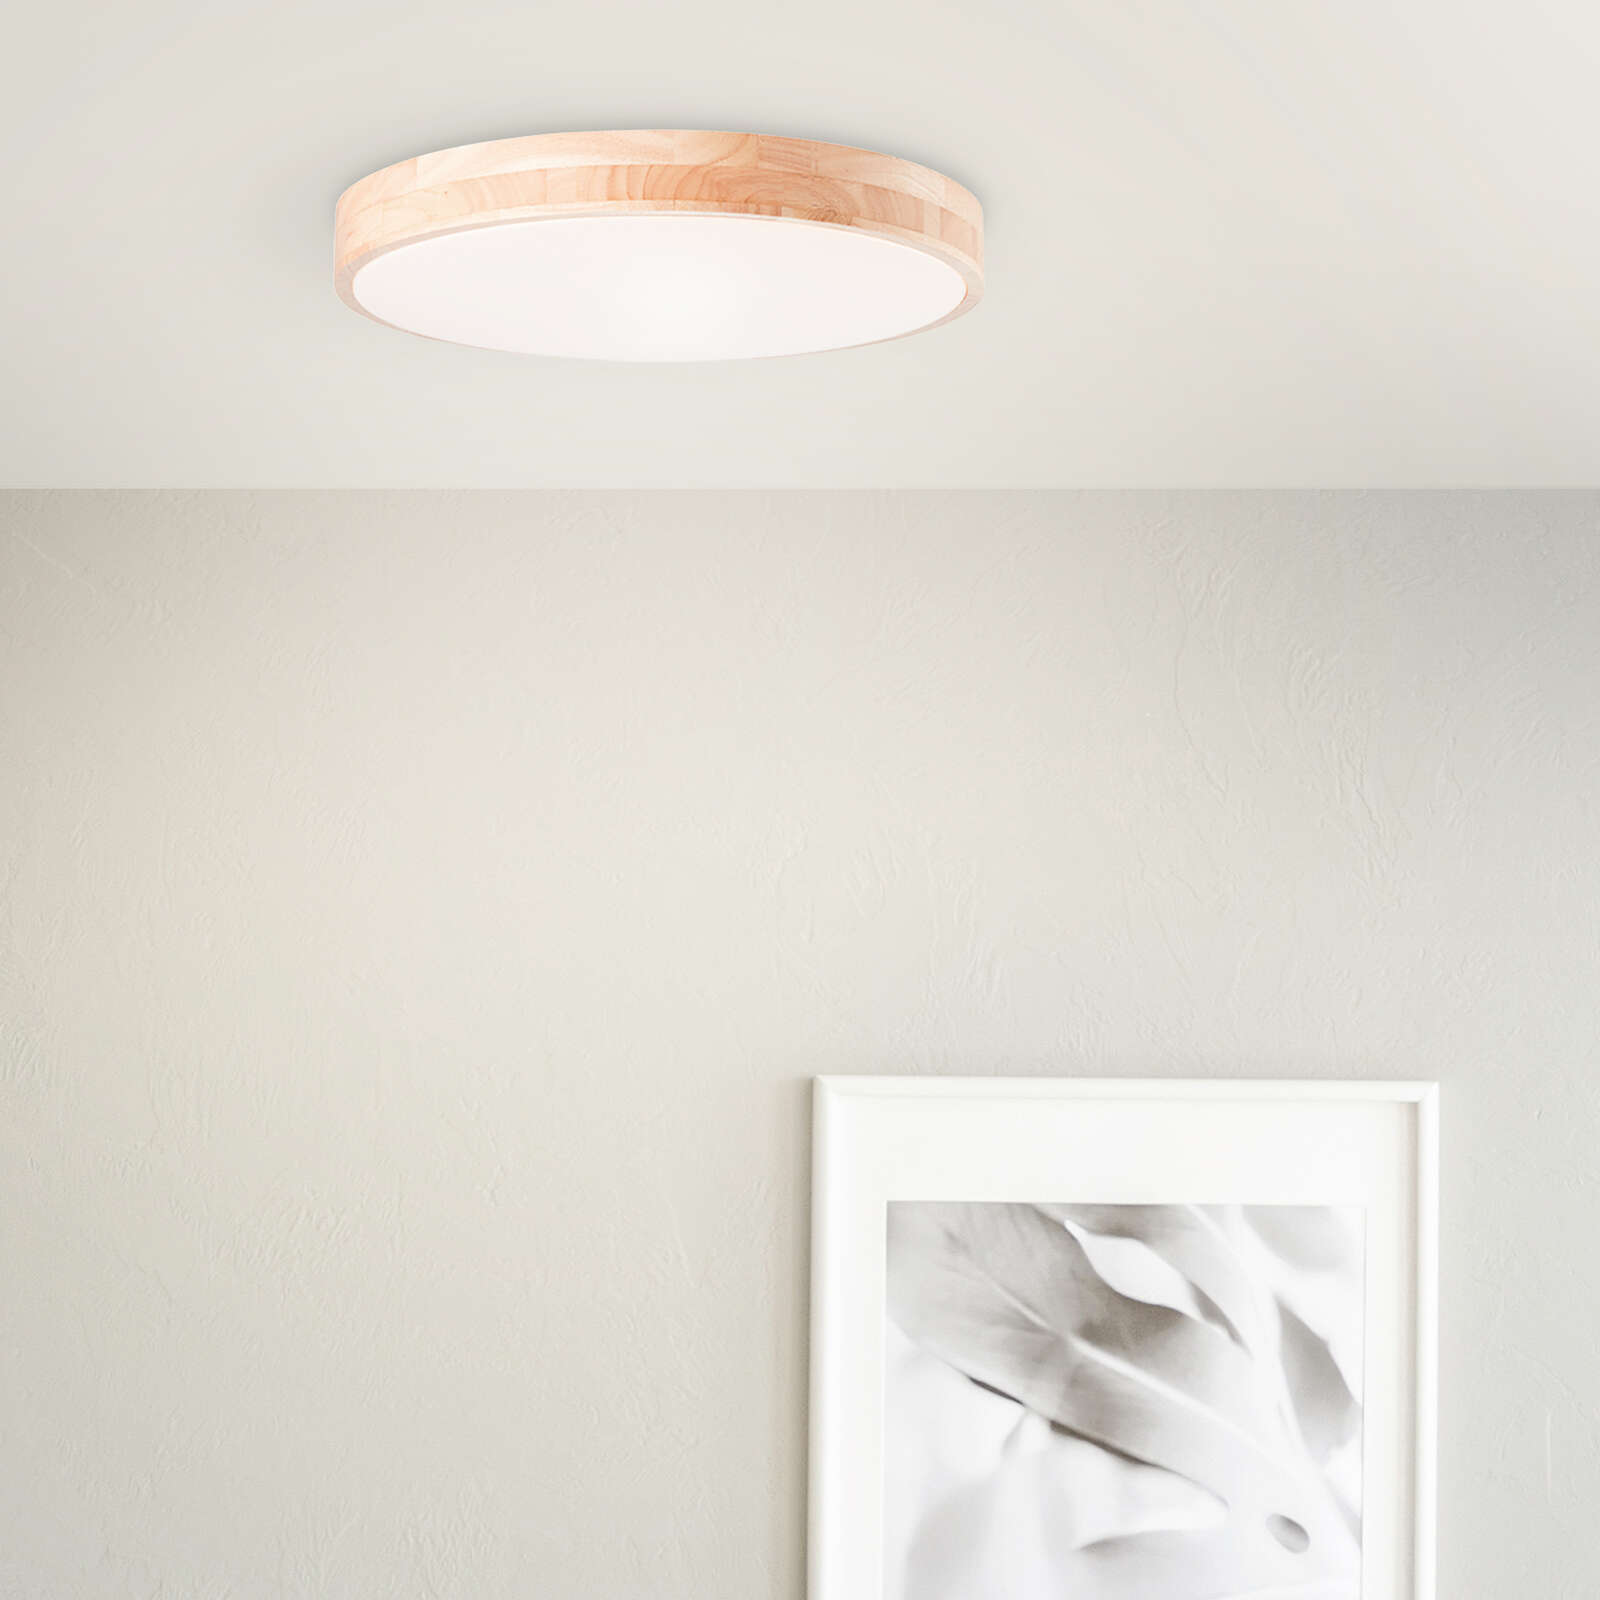             Lampada da parete e soffitto in legno - Niklas 2 - Marrone
        